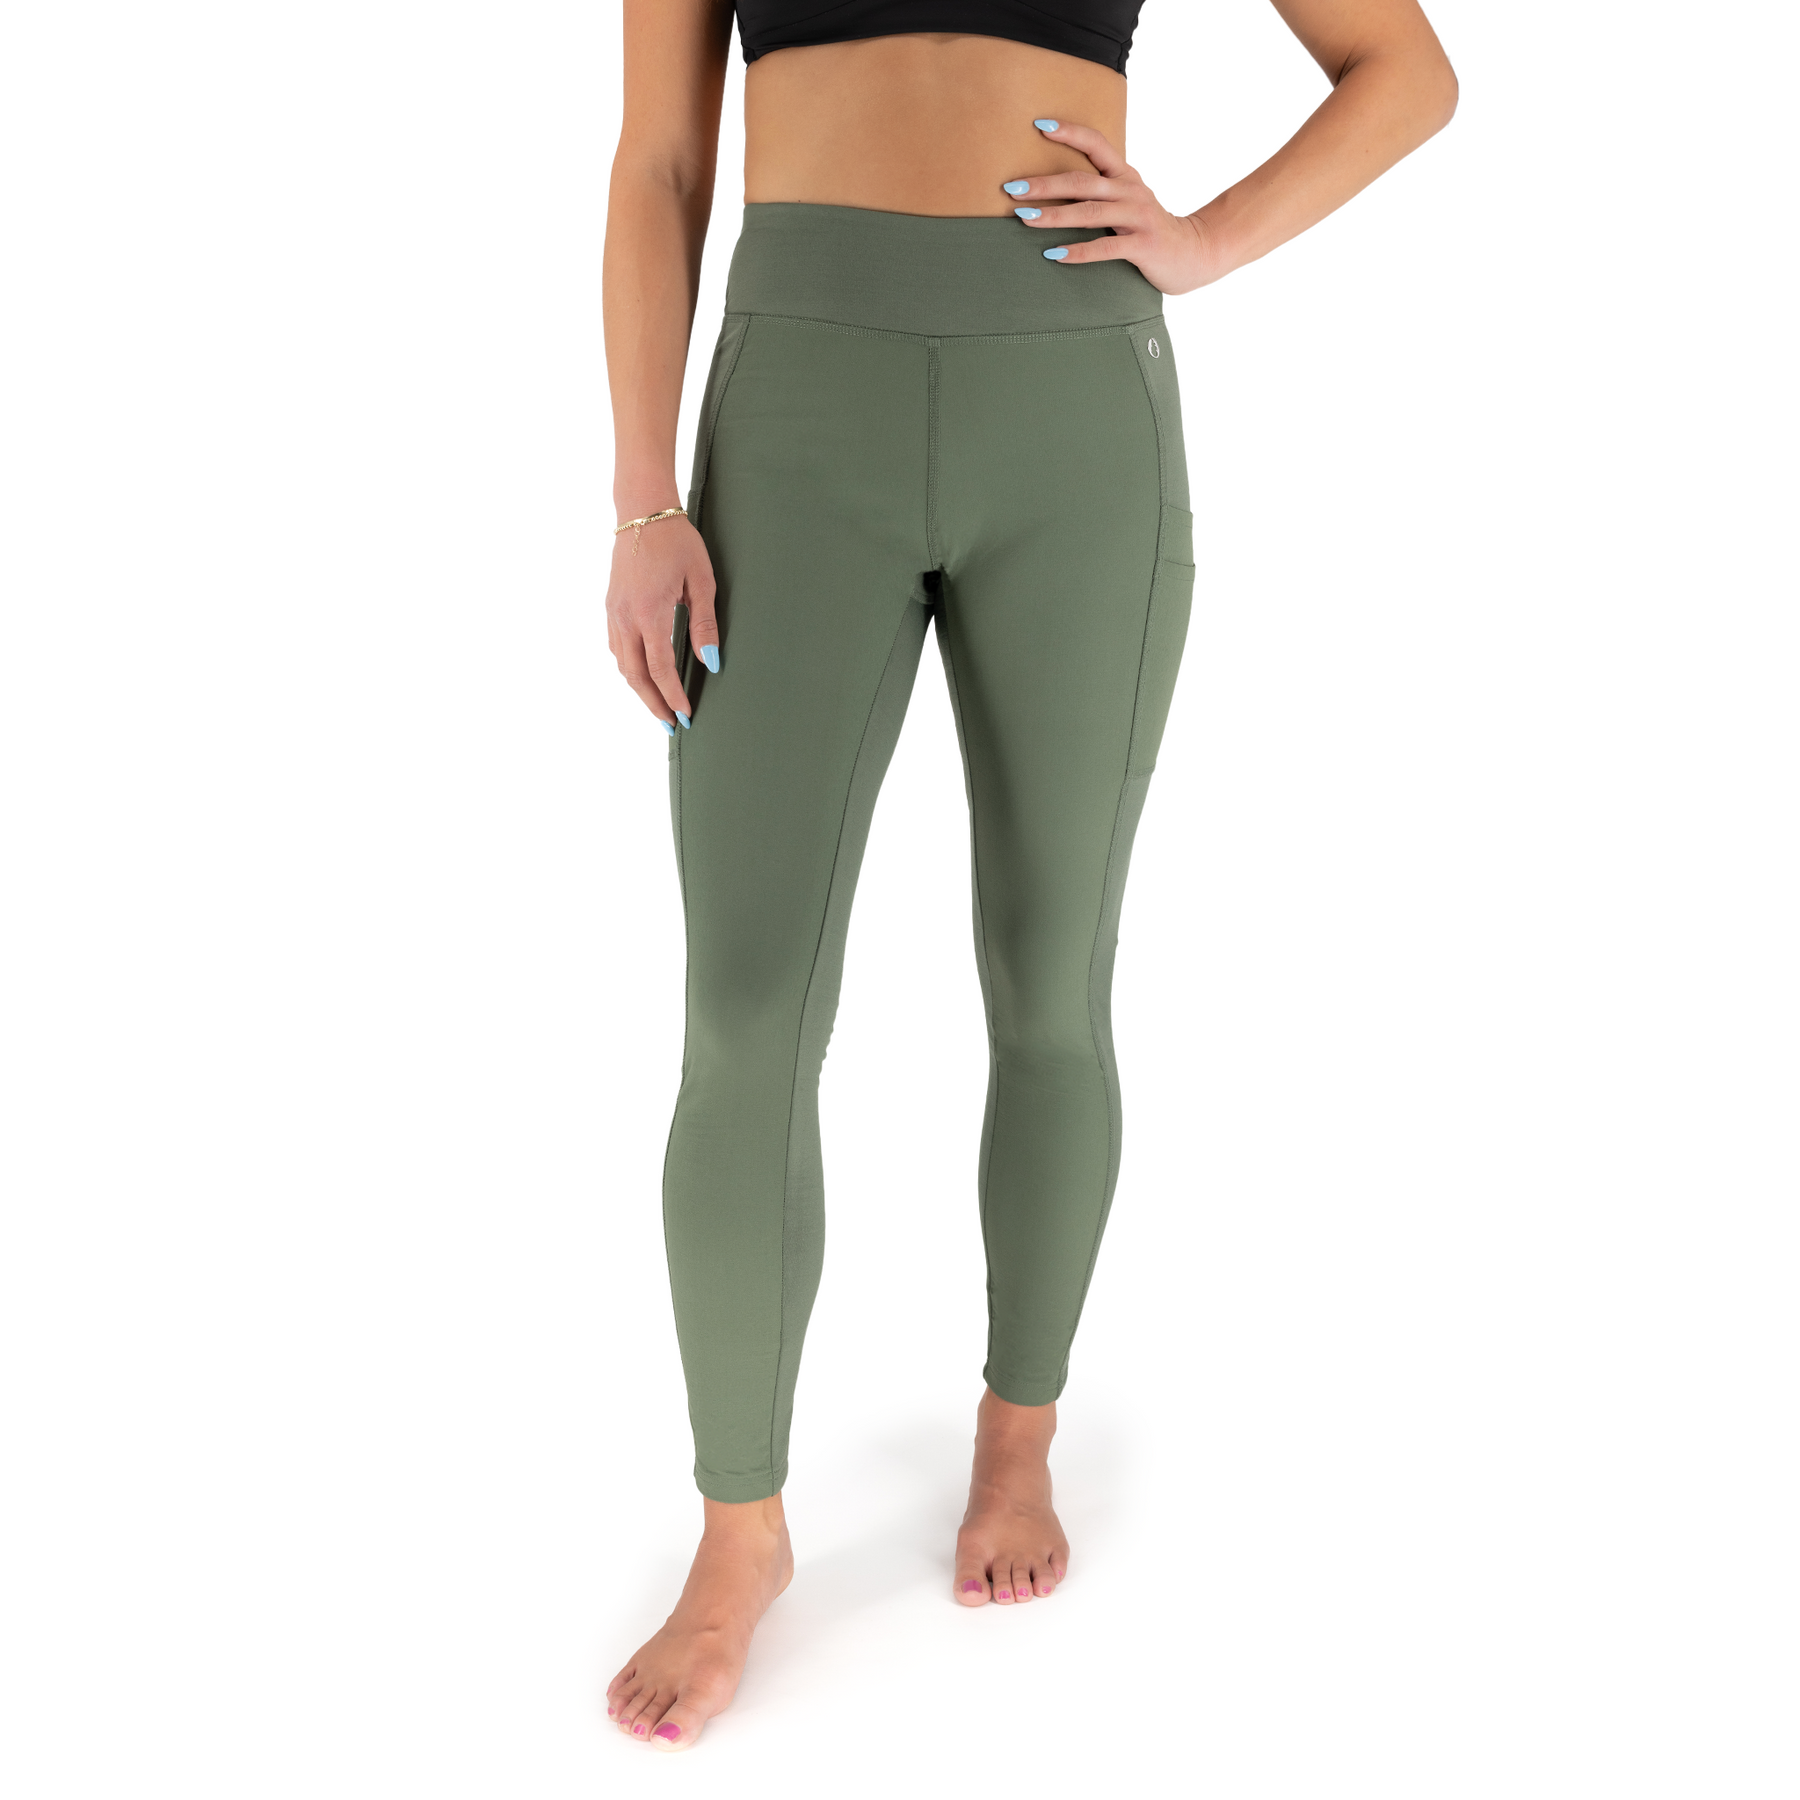  Hybrid & Company Women's Soft High Waisted Yoga Pants